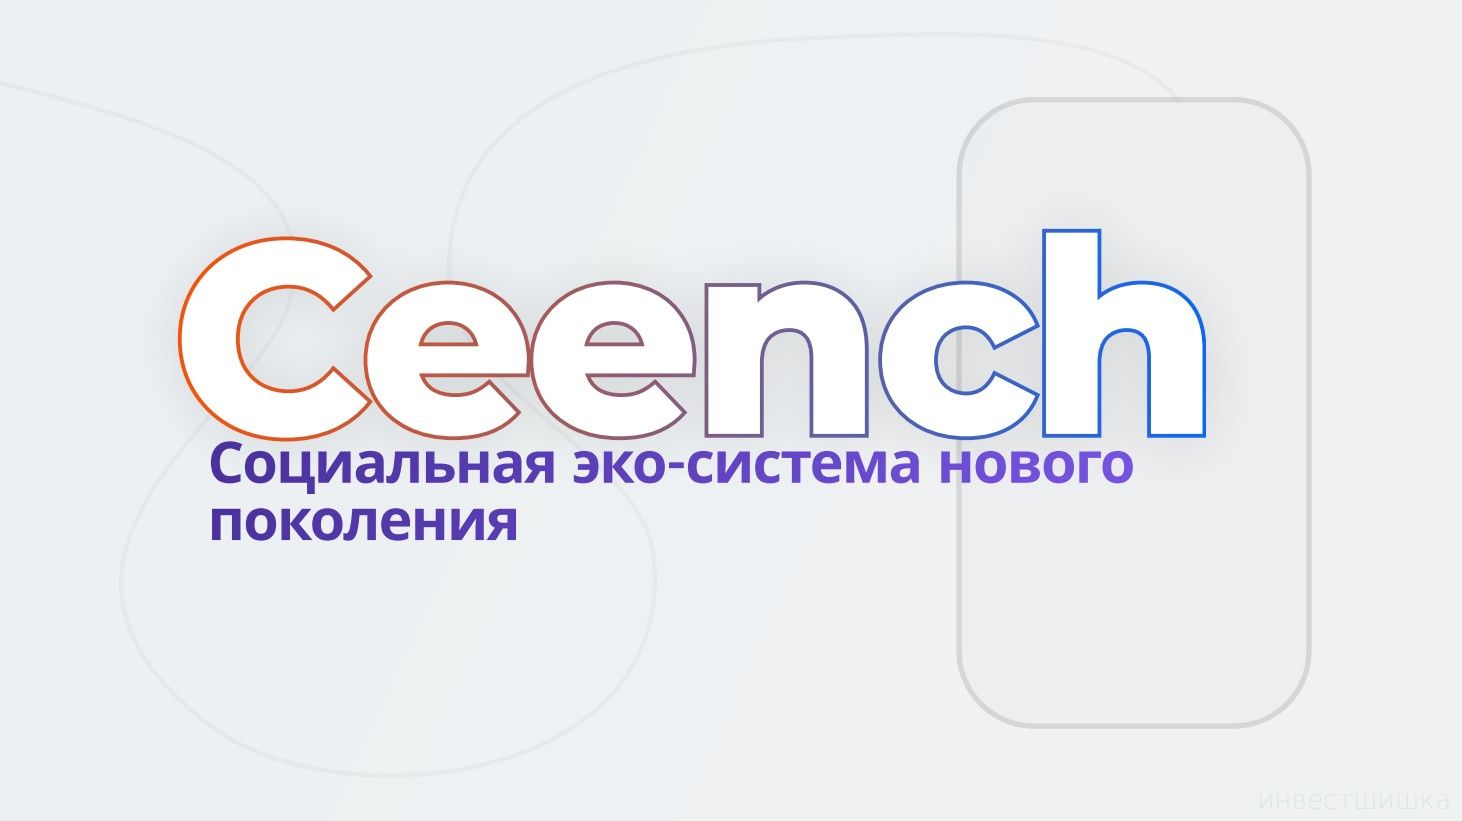 Социальная экосистема нового поколения Ceench #П0013